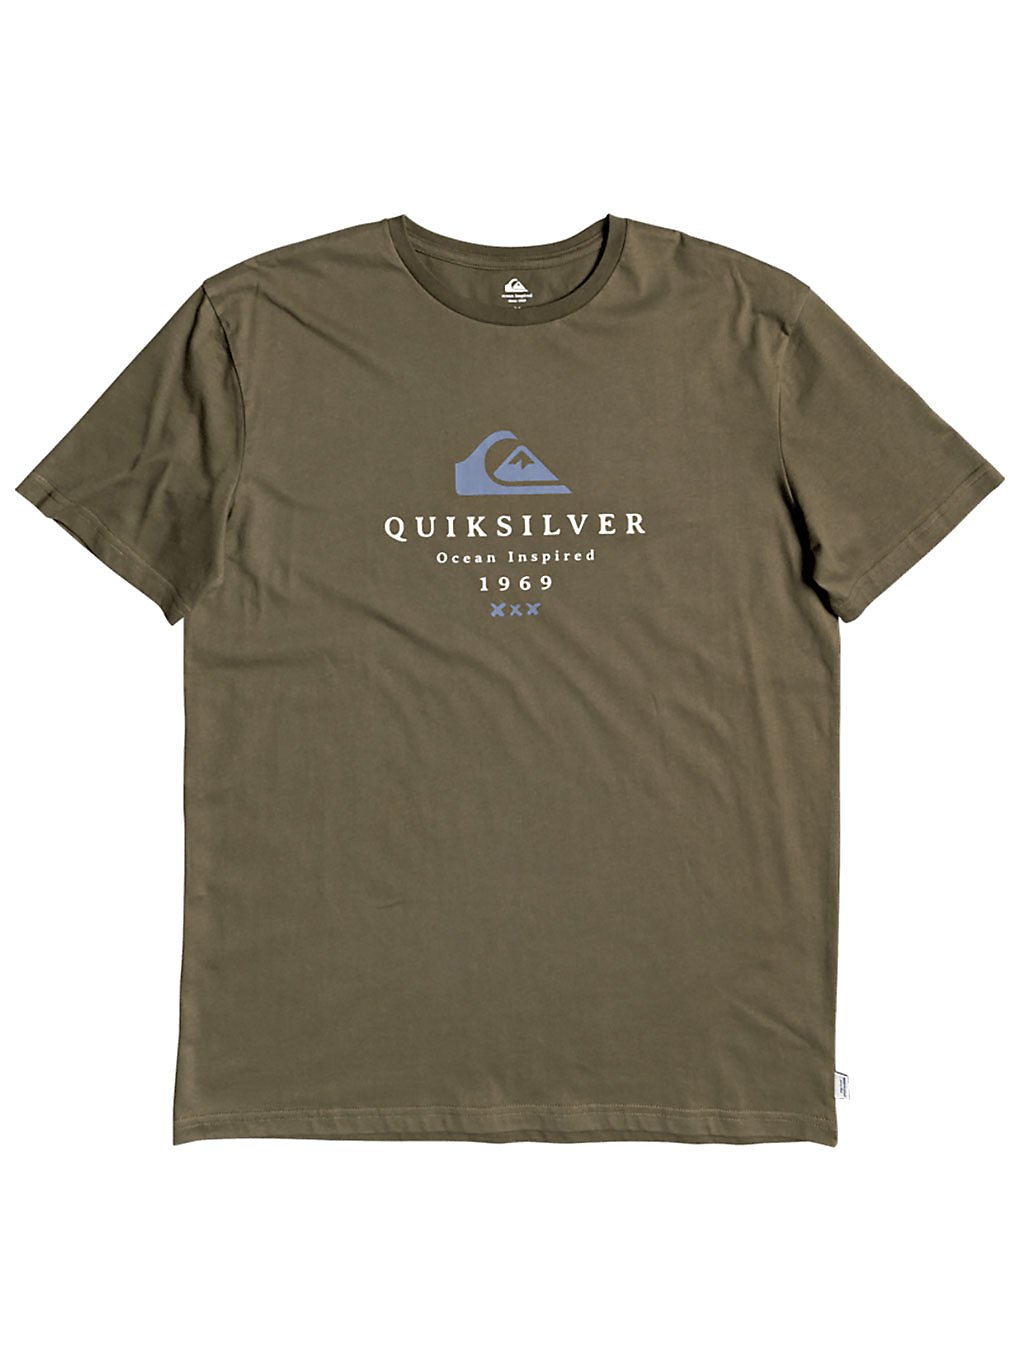 Quiksilver First Fire T-Shirt kalamata